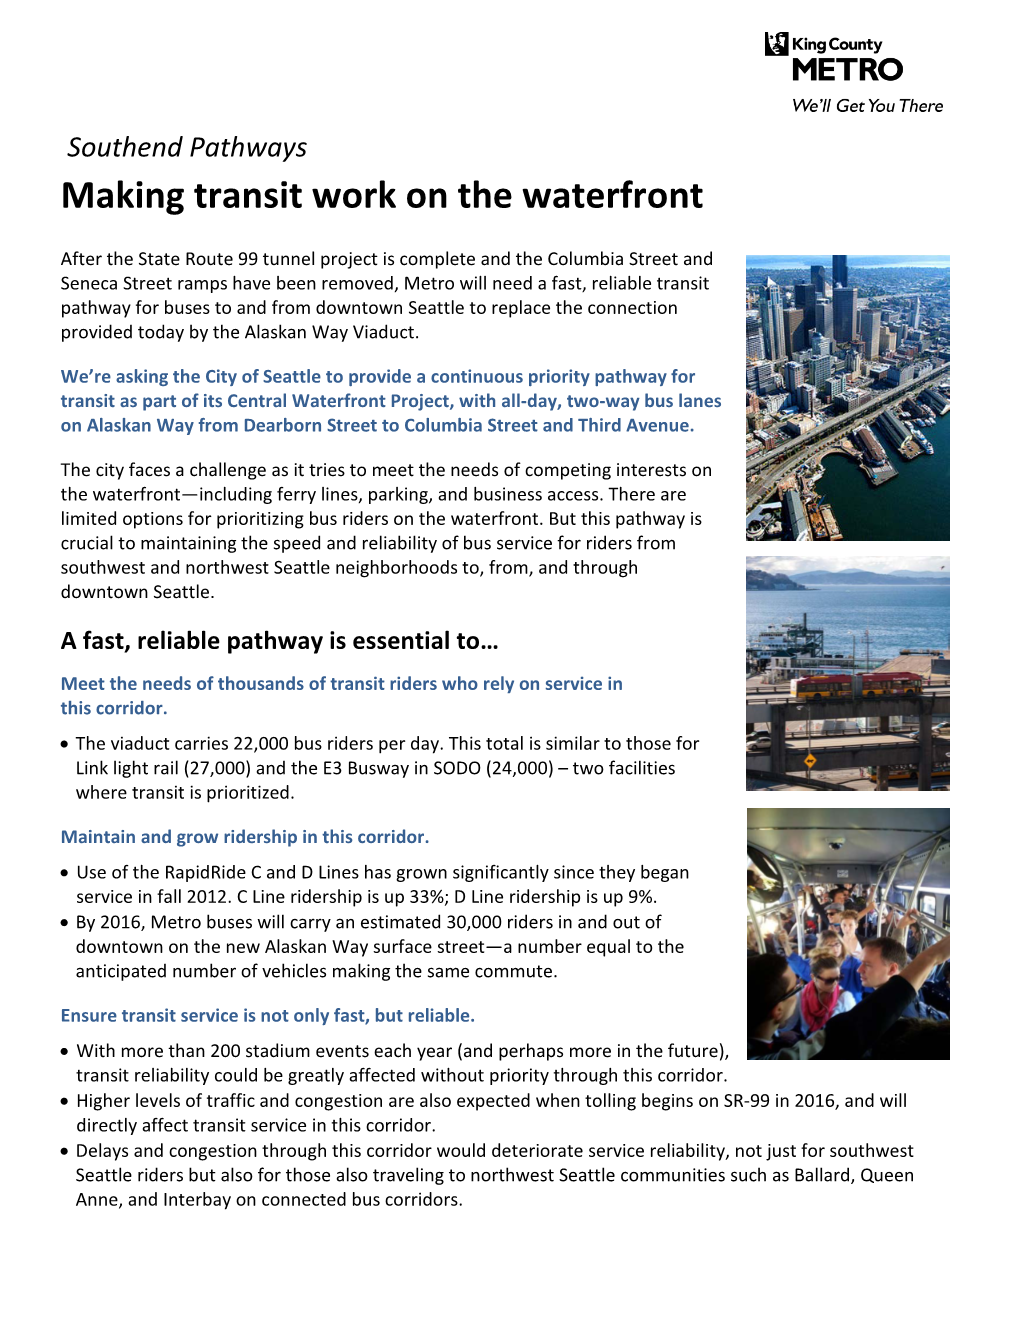 Making Transit Work on the Waterfront